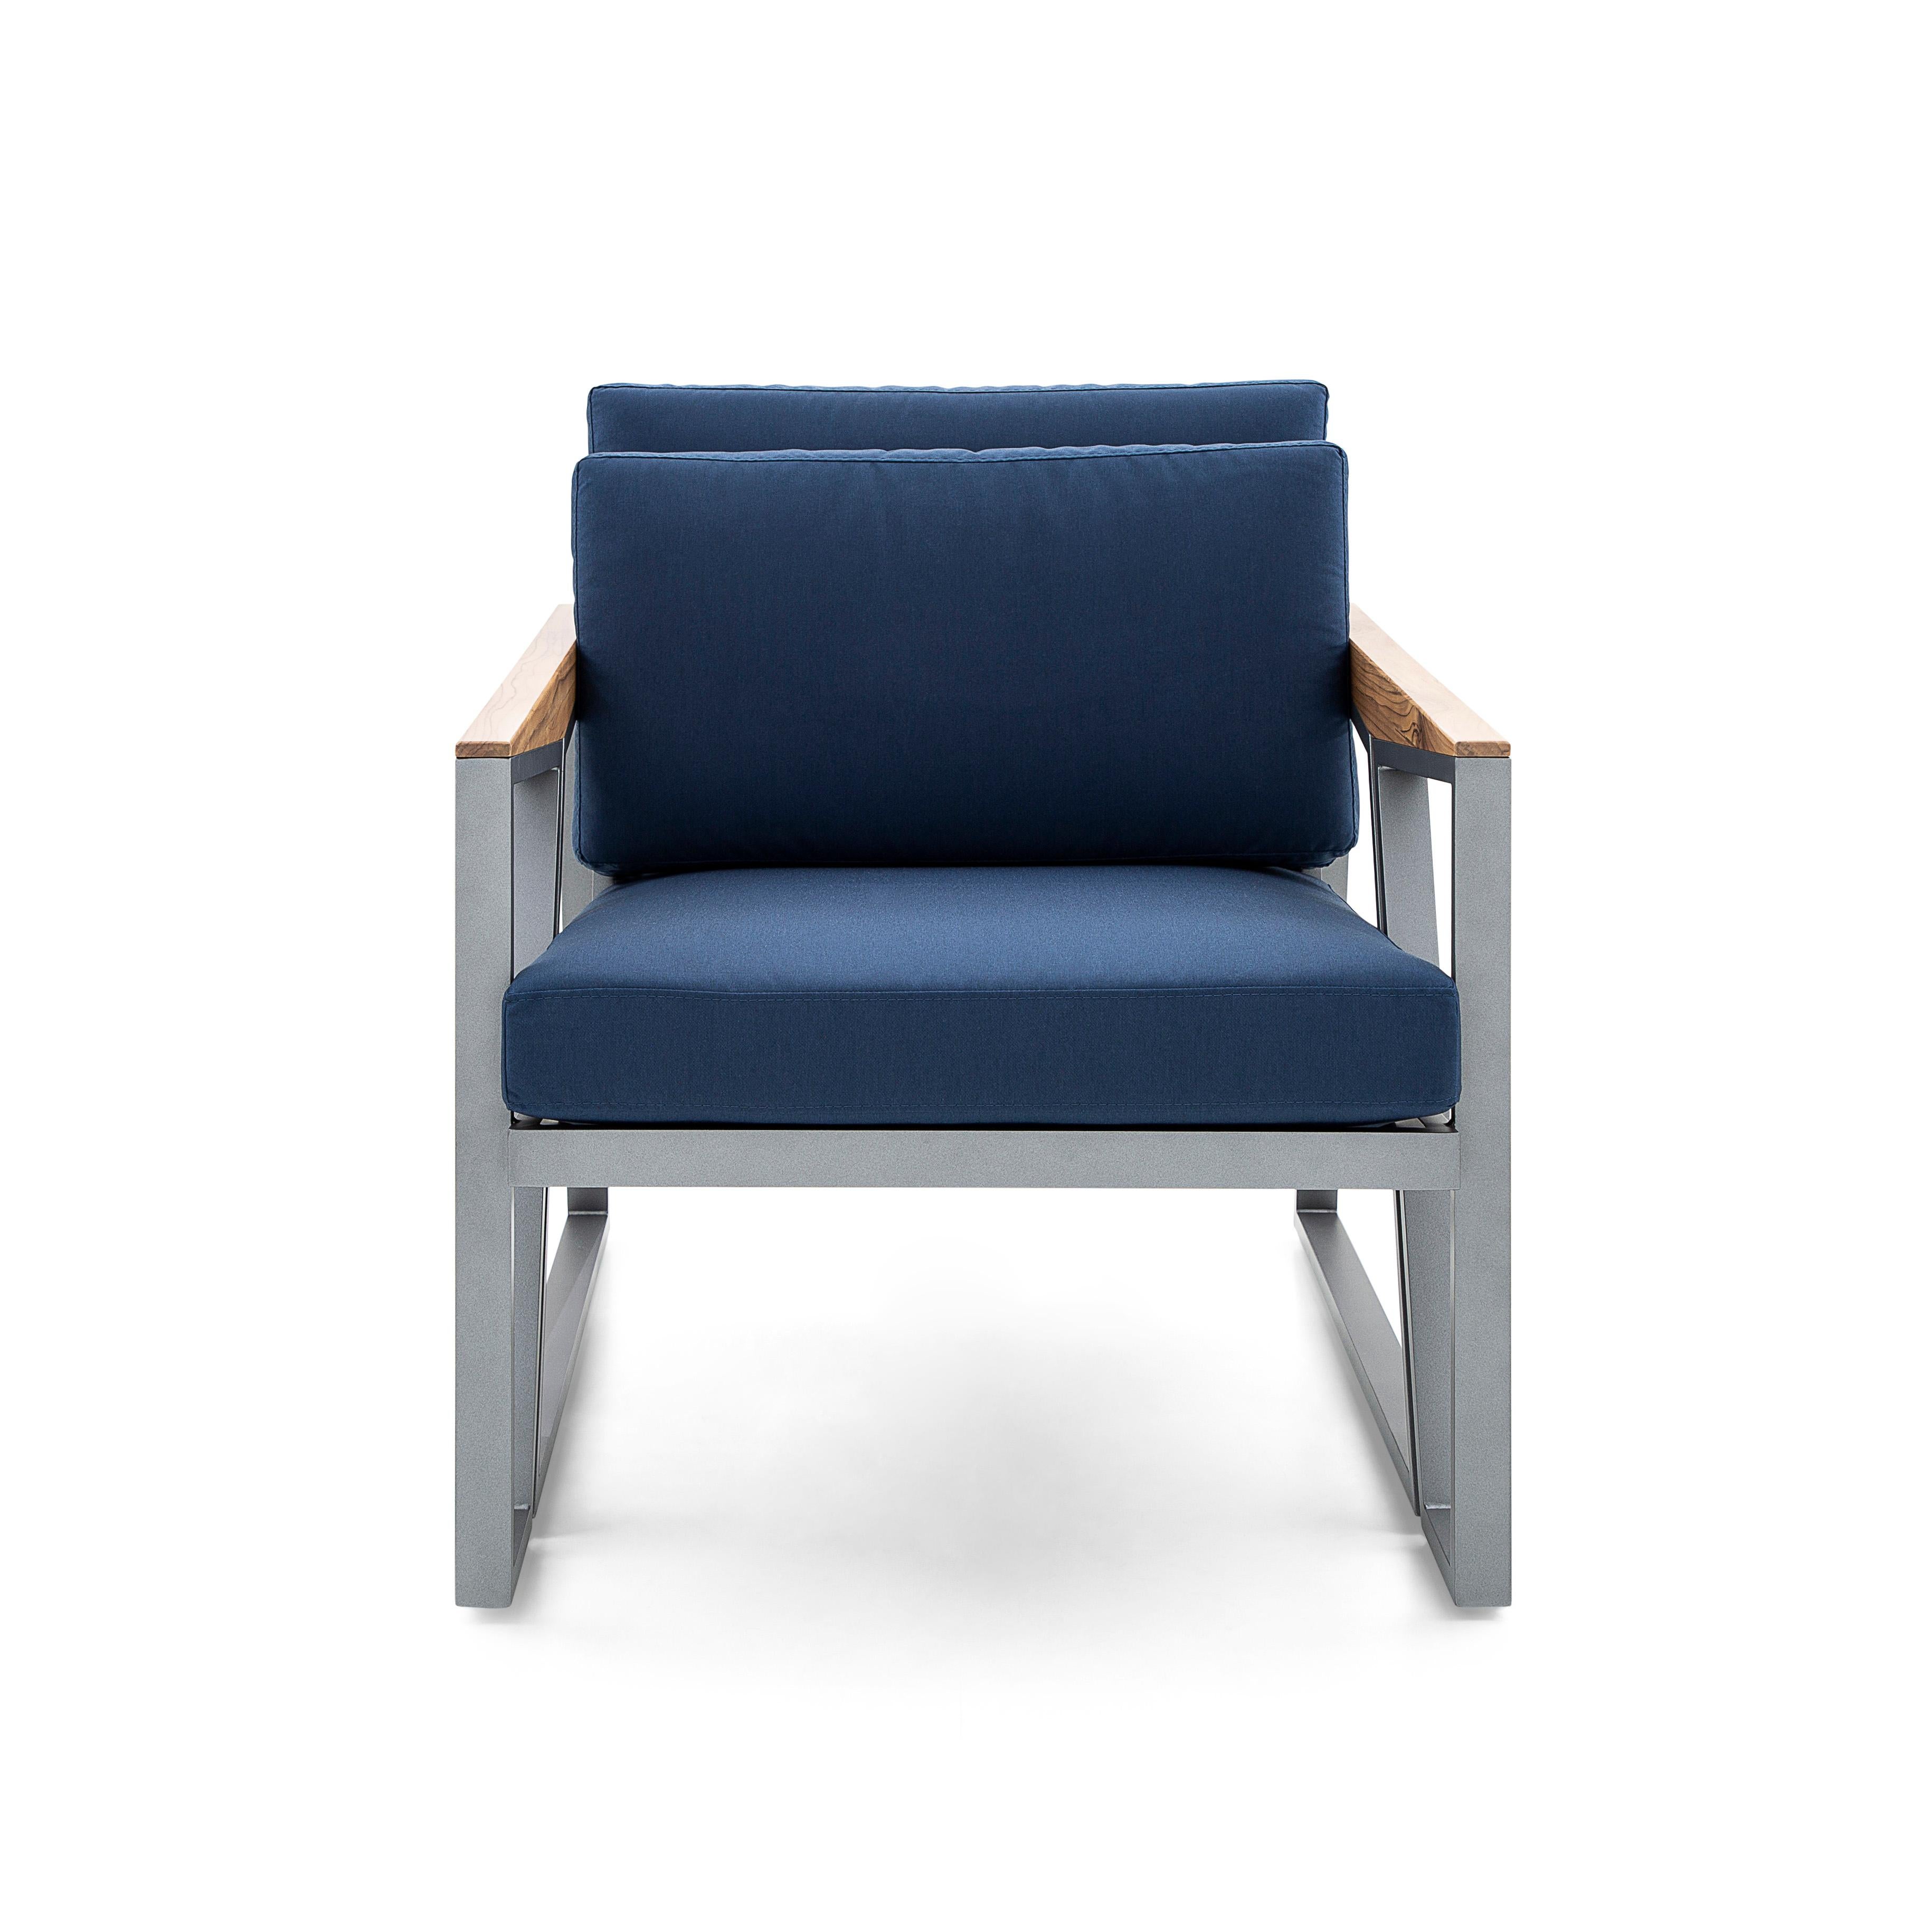 Le fauteuil Scalene a été créé par notre incroyable équipe d'Uultis Design, avec un tissu rembourré d'un beau bleu foncé, doté d'une structure en aluminium soudé qui donne à ce fauteuil plus de résistance et évite les craquements et les défauts dans